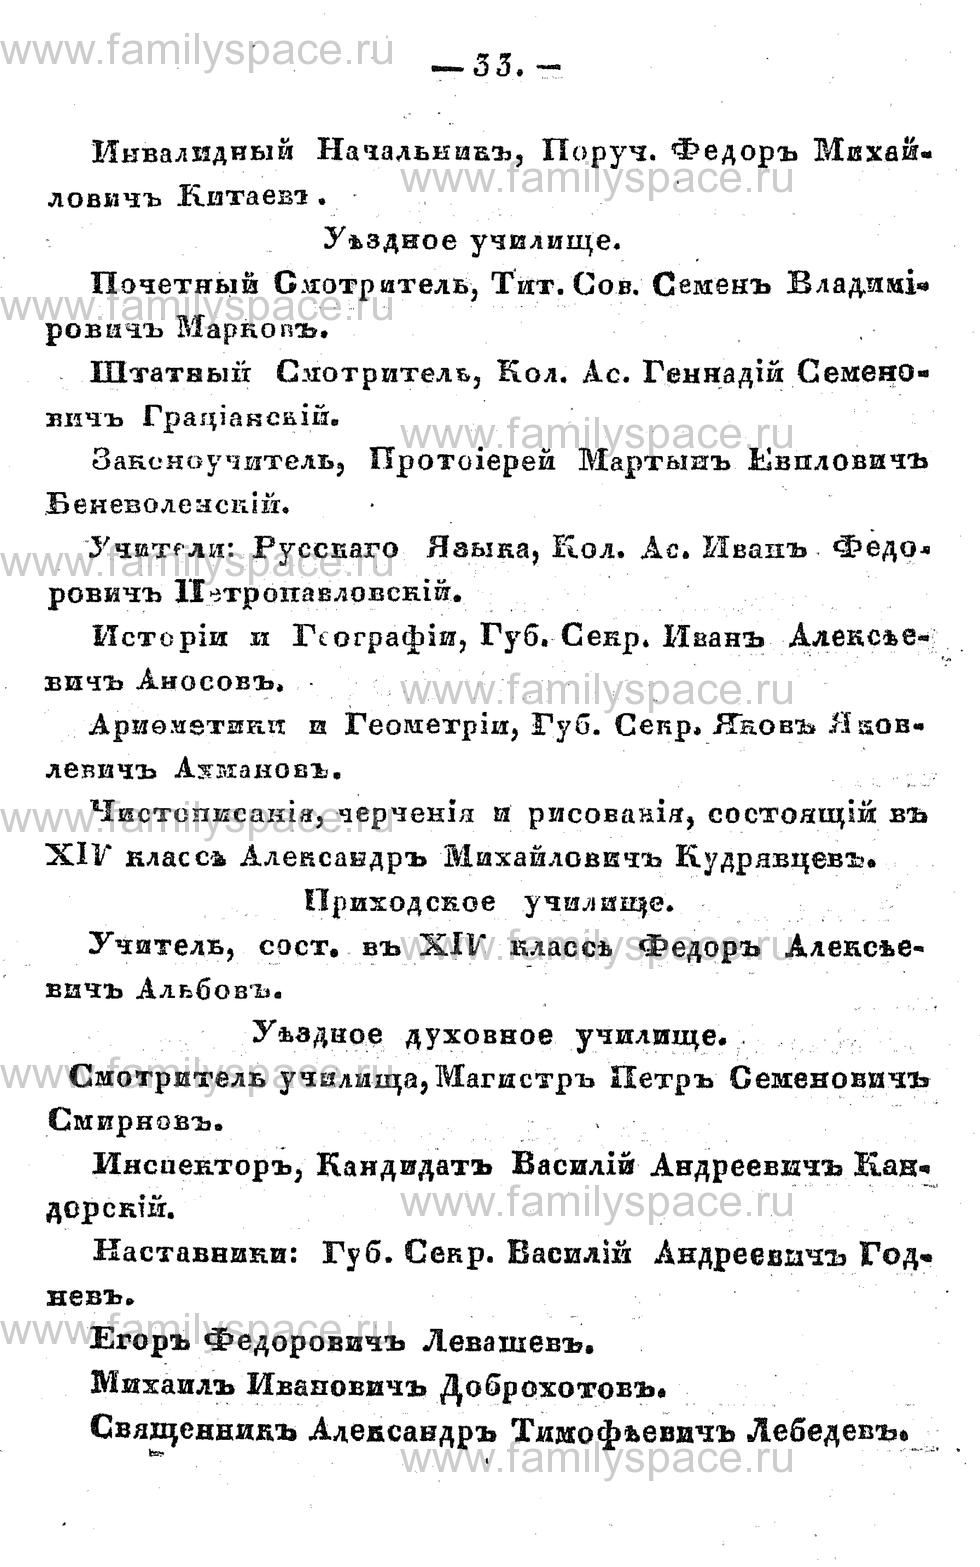 Поиск по фамилии - Памятная книжка Костромской губернии на 1857 год, страница 33